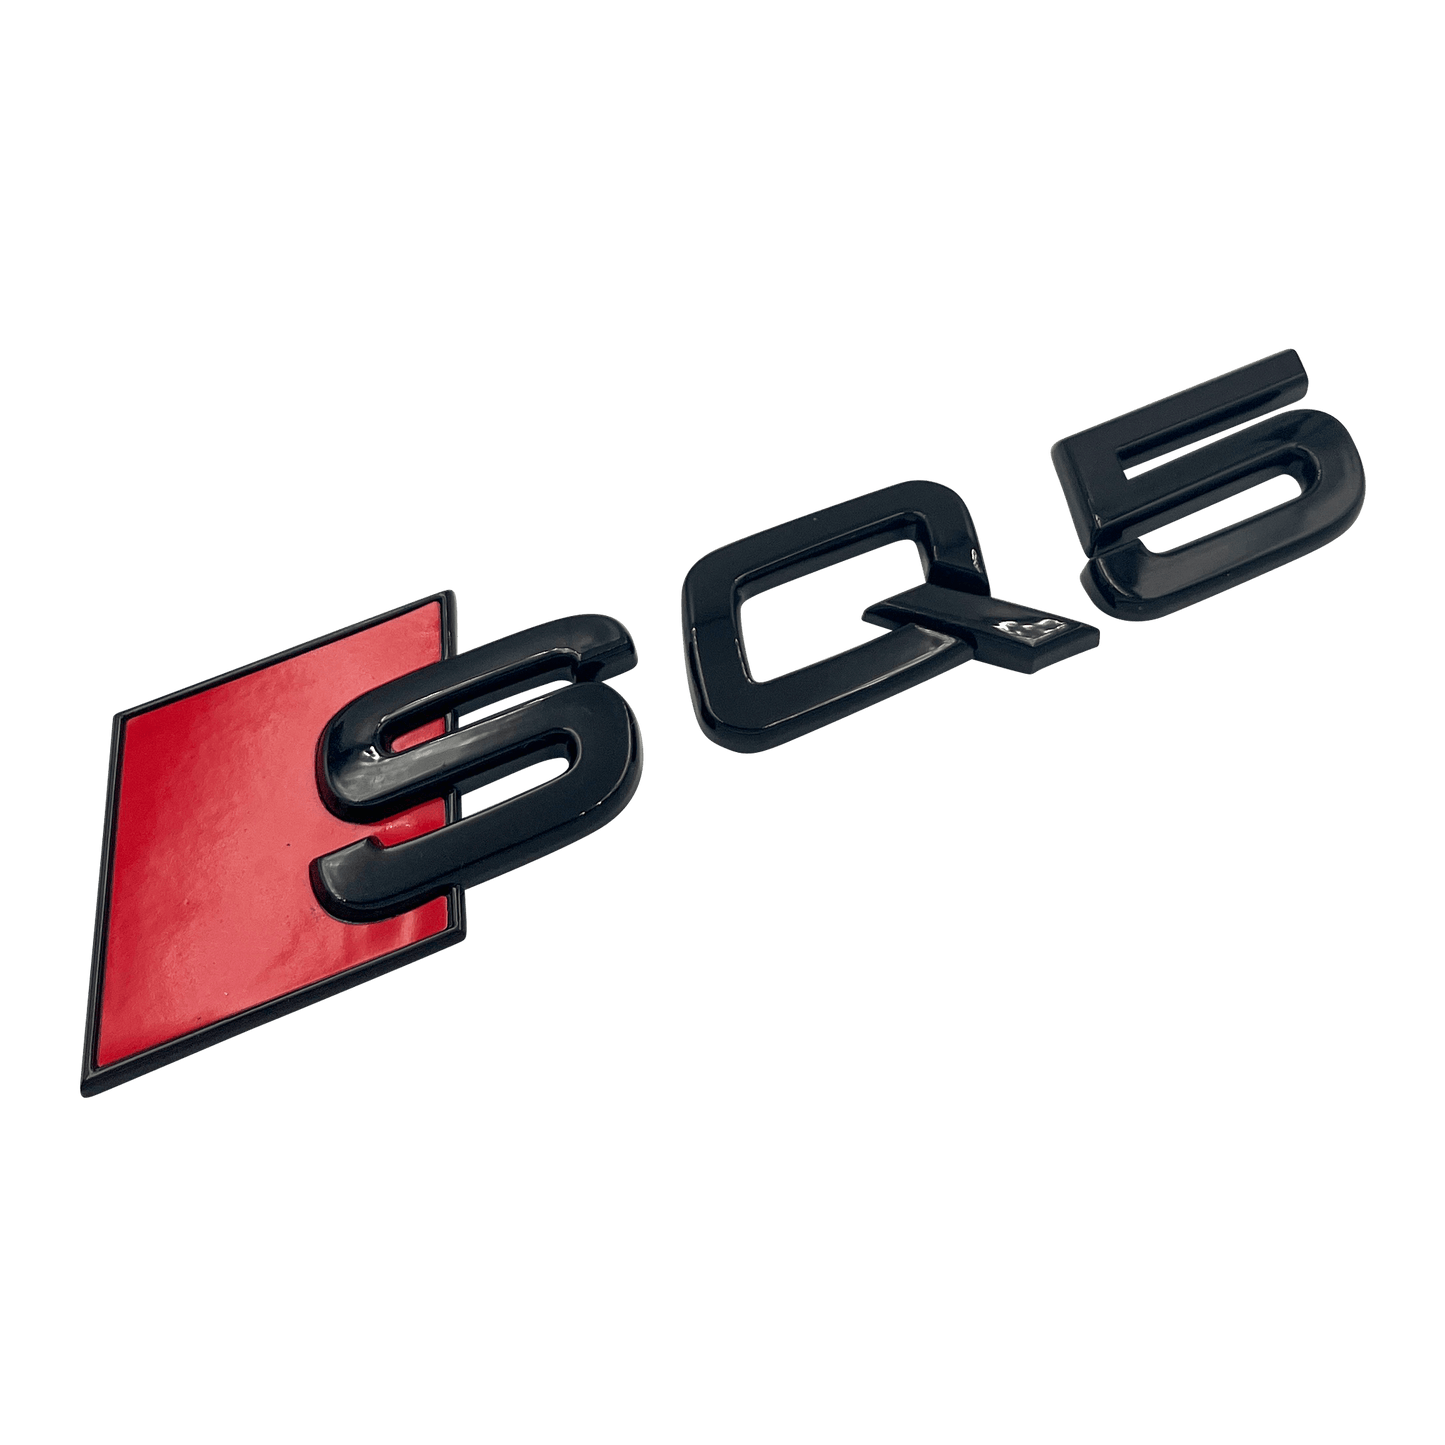 Sort Audi SQ5 Emblem Badge